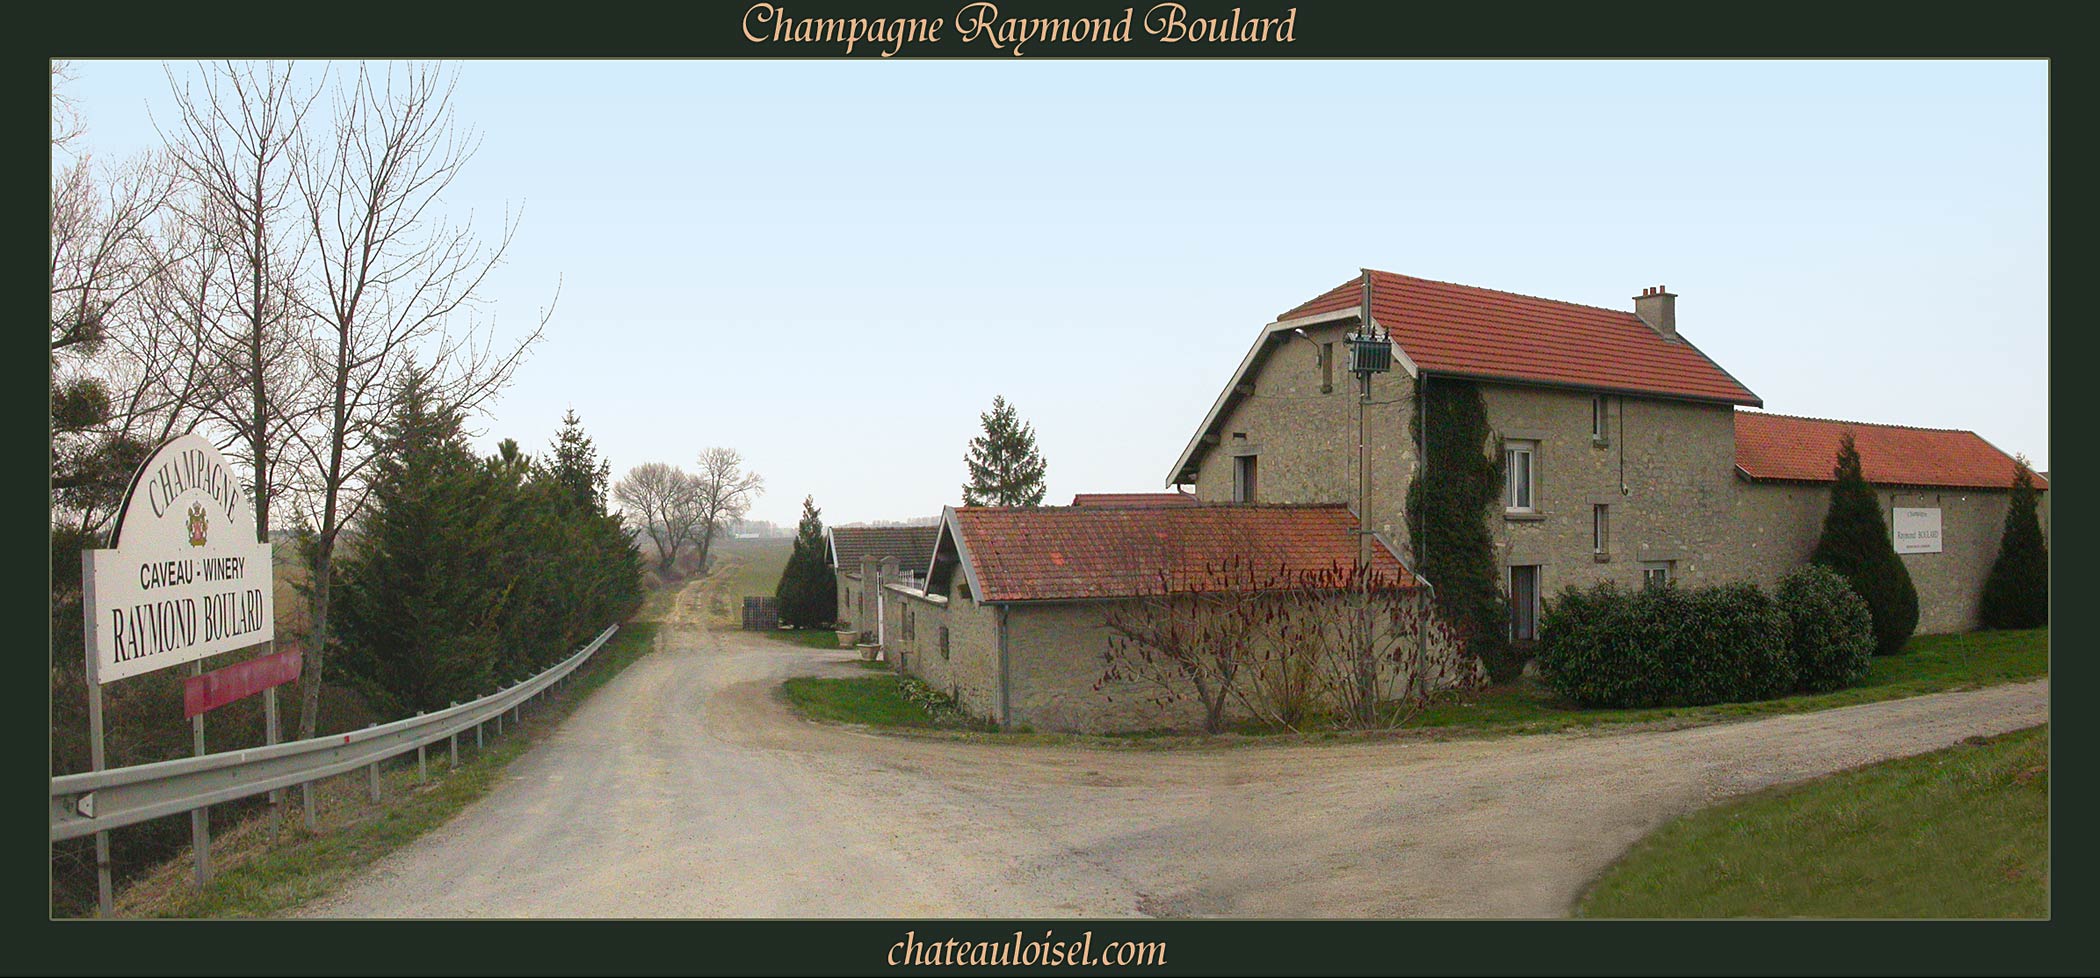 Champagne Raymond Boulard